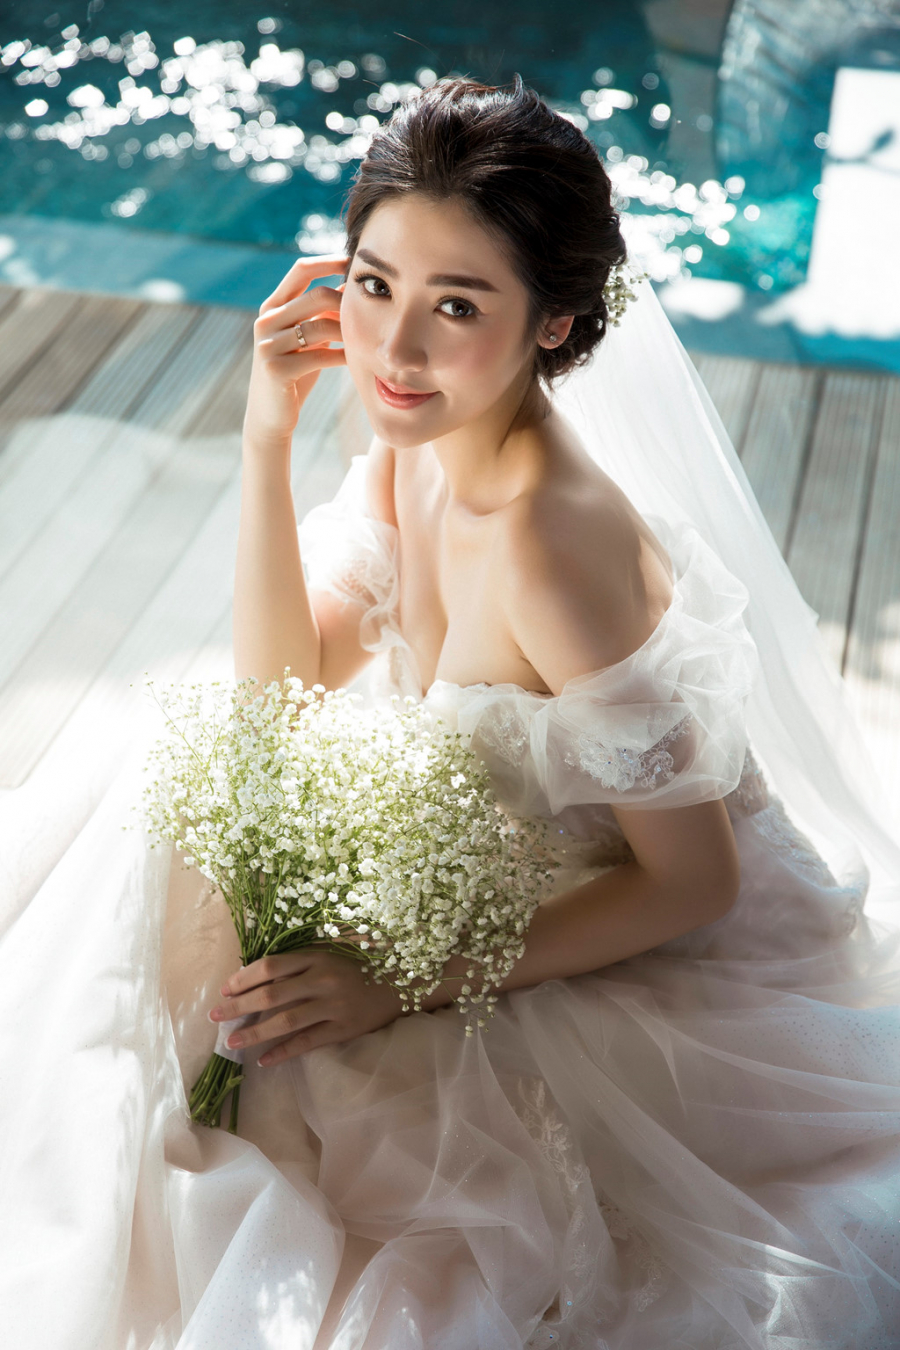 Á hậu Hoa hậu Việt Nam 2012 diện hai chiếc váy cưới trong buổi chụp. Trong bộ đầm cúp ngực, Tú Anh khoe khéo vóc dáng gợi cảm.